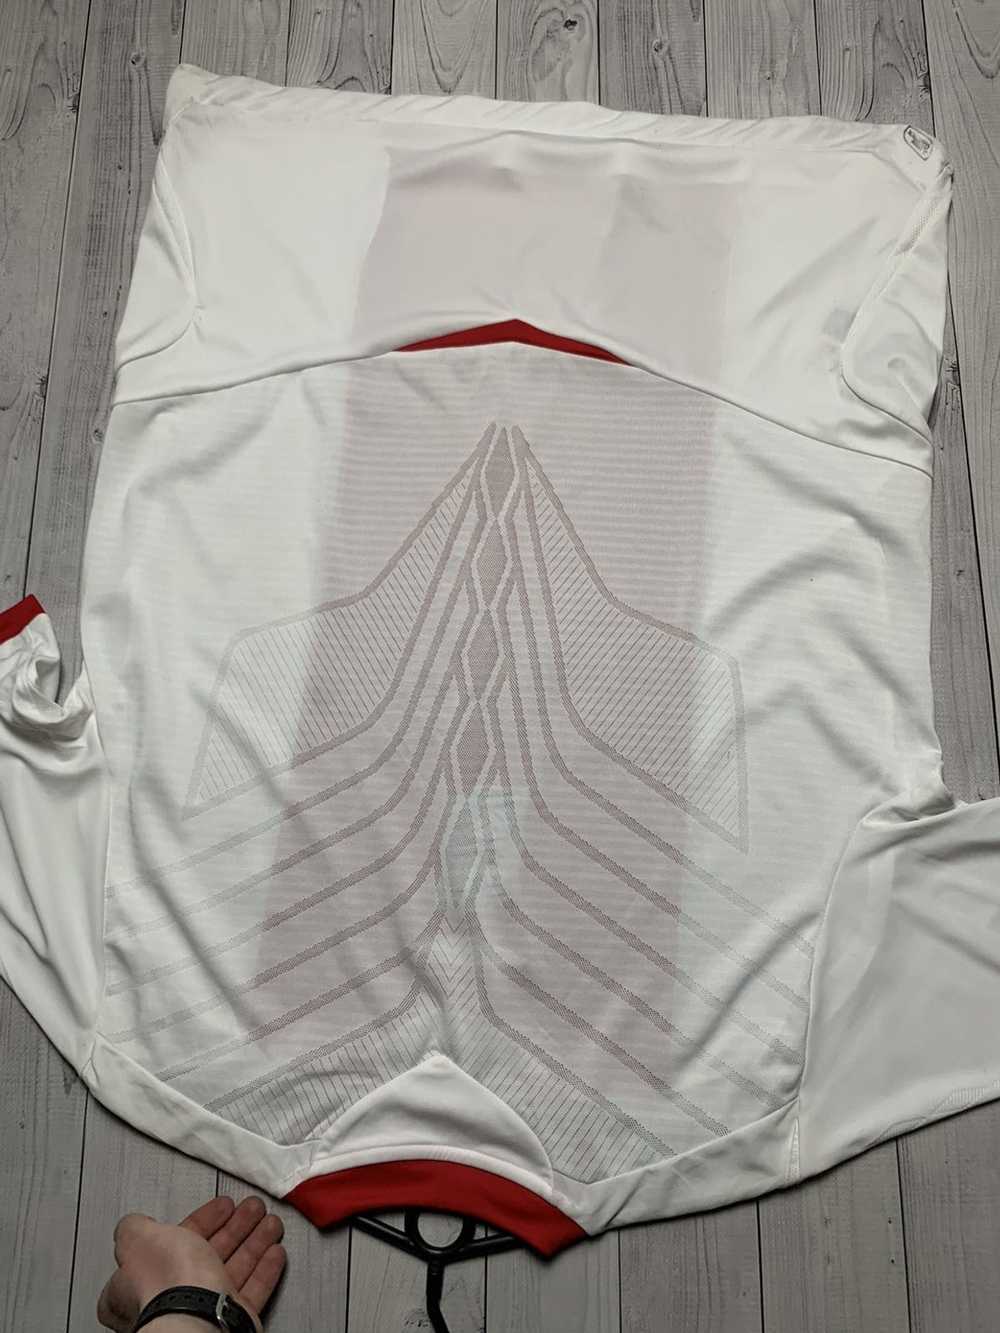 Soccer Jersey × Umbro Vintage Umbro soccer jersey… - image 7